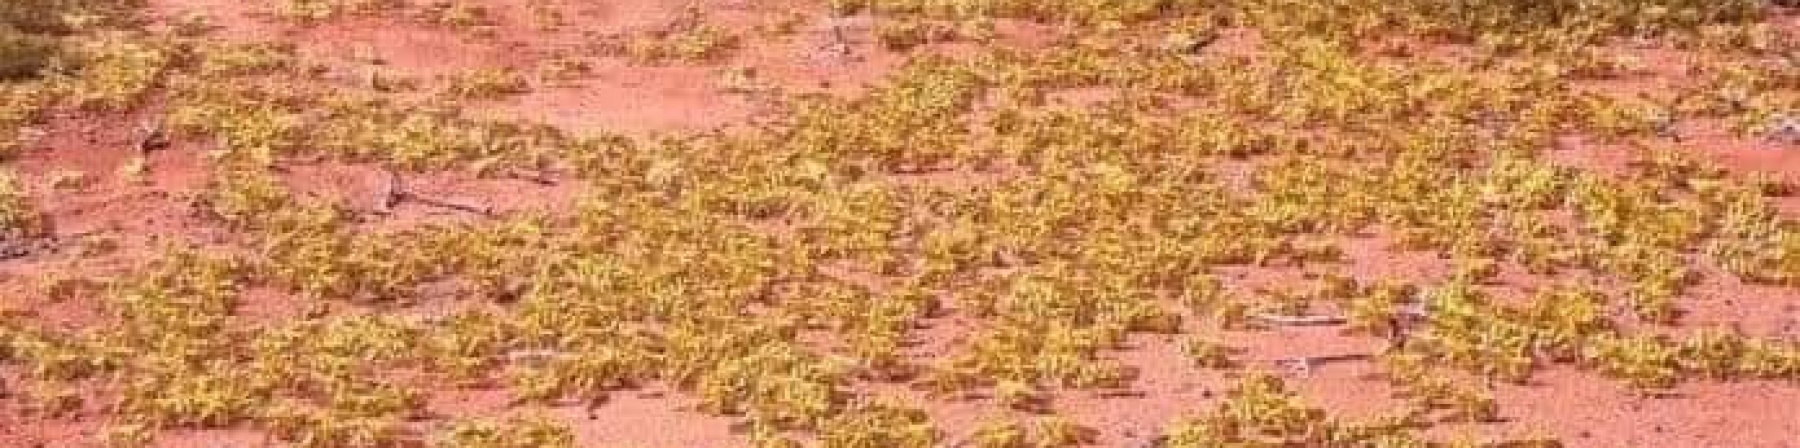 locuste verdi su terreno arido